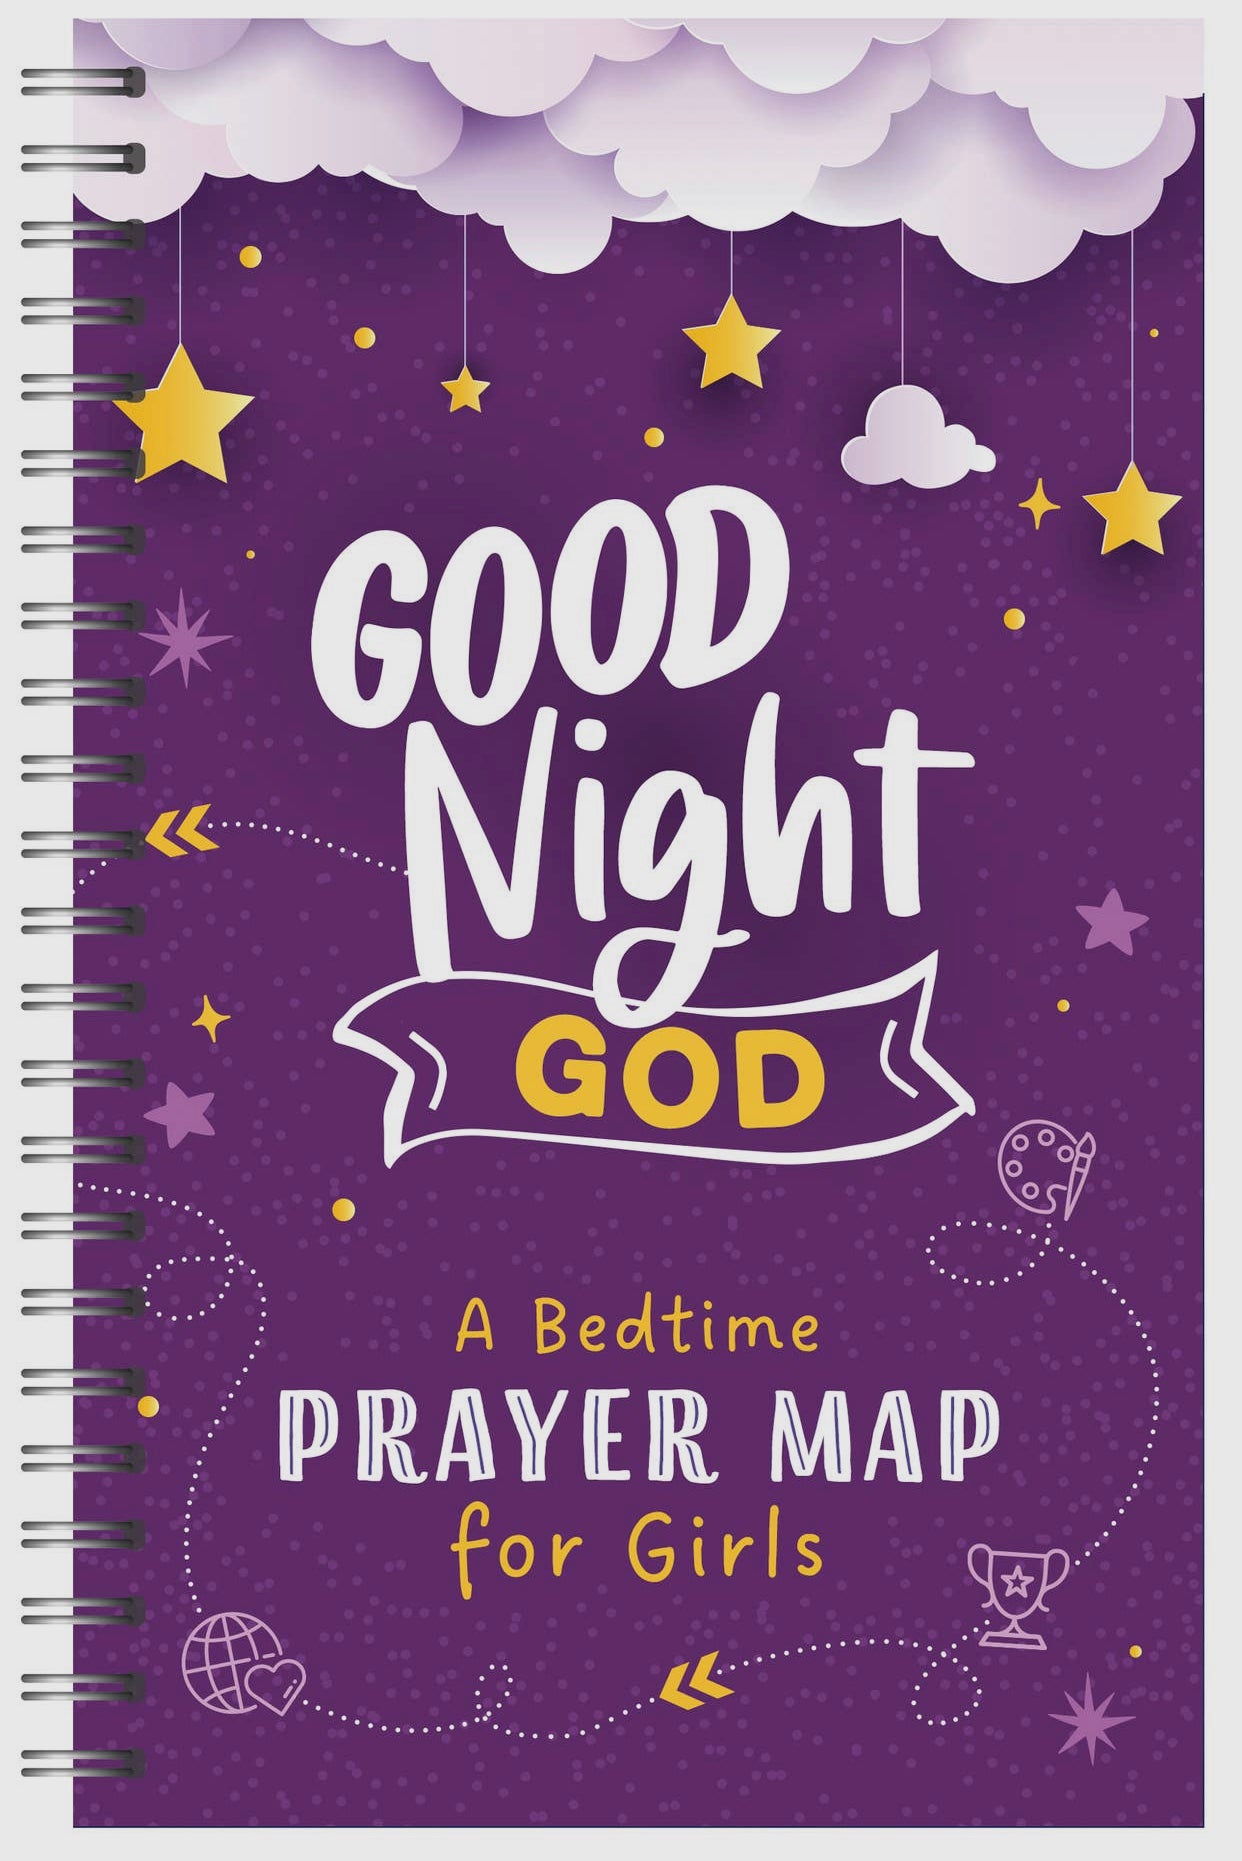 Good Night, God: A Bedtime Prayer Map for Girls